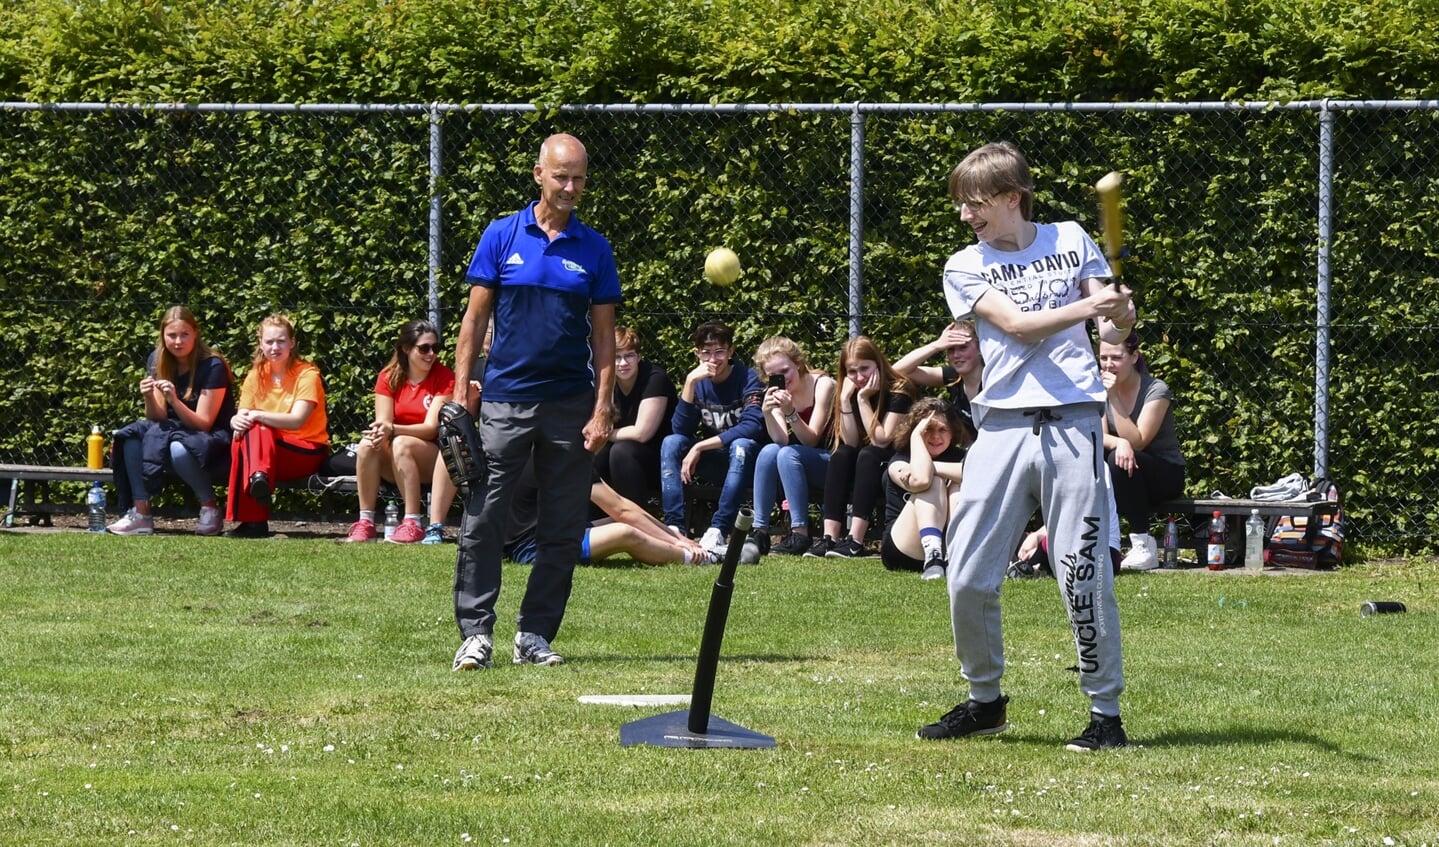 De Duitsers softballen op het Griftland College. De dit jaar overleden oud-docent Ruud ten Kleij introduceerde ooit deze sport bij hen in 'Soost´.